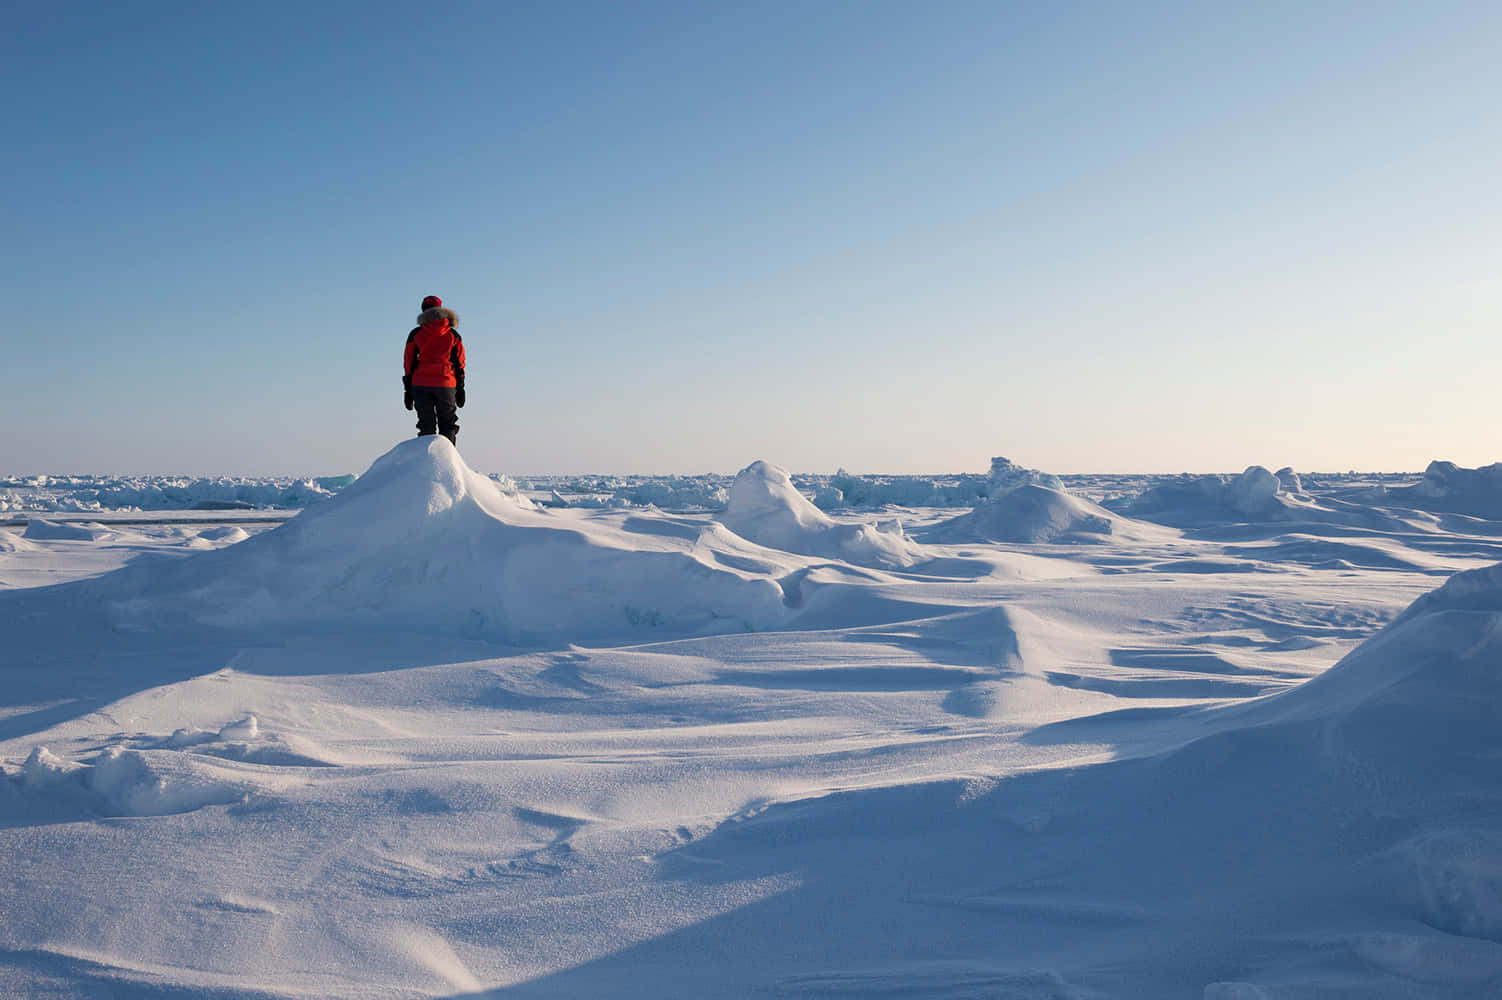 Imagende Una Persona En Un Montículo De Hielo En El Polo Norte.